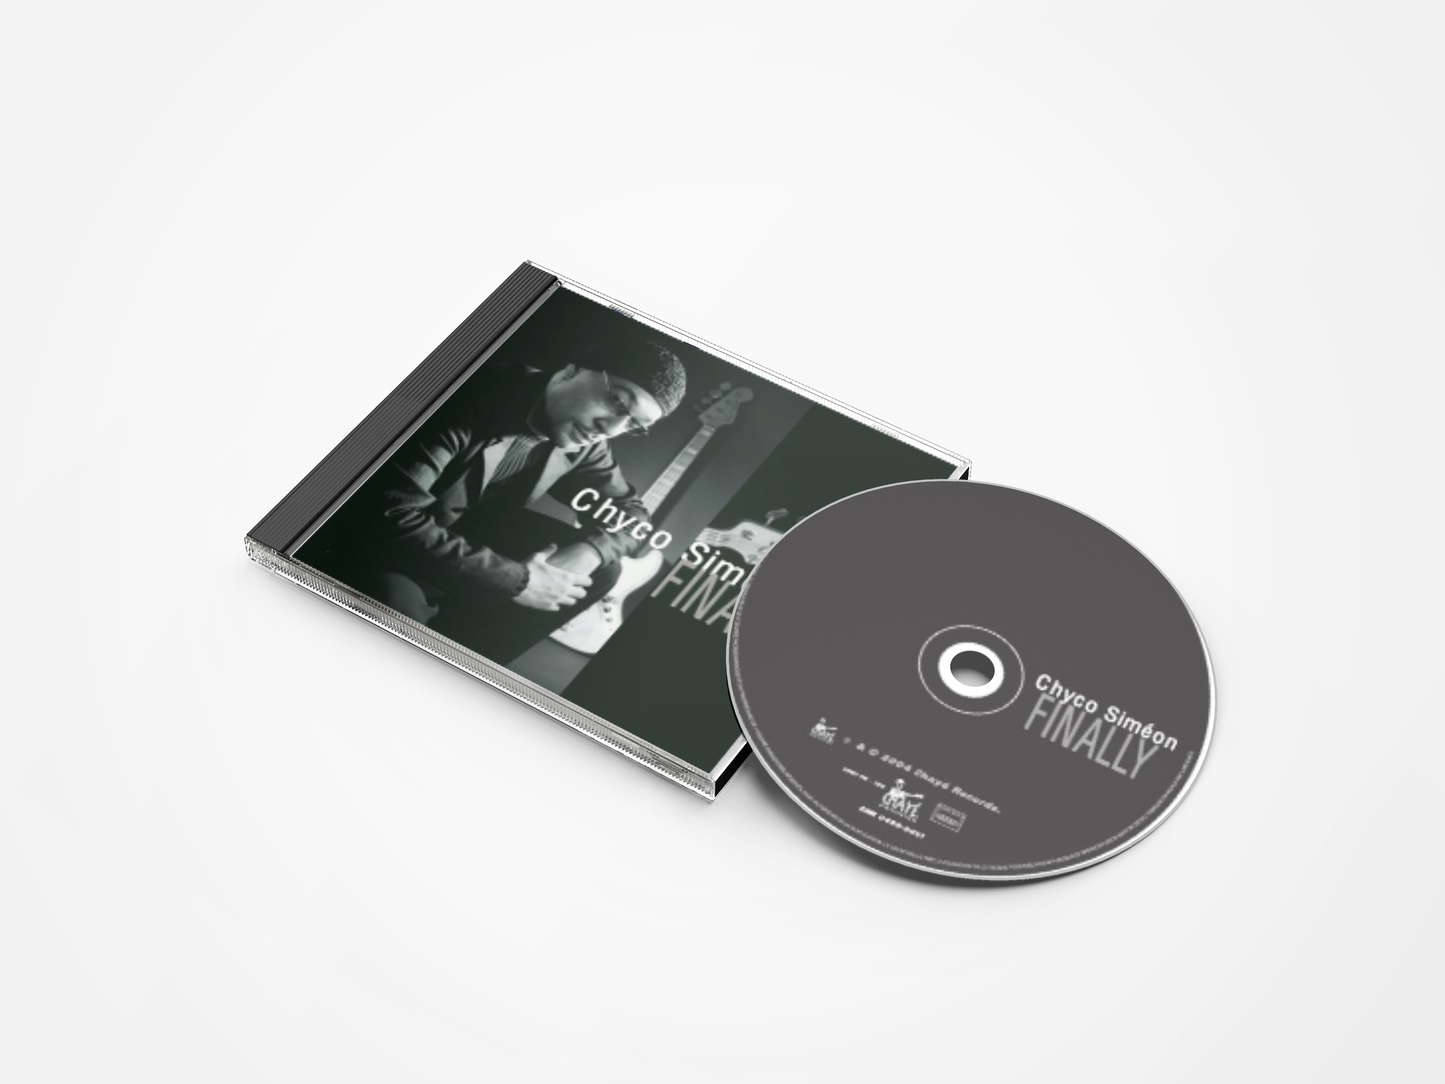 Chyco Simeon-Enfin (CD)